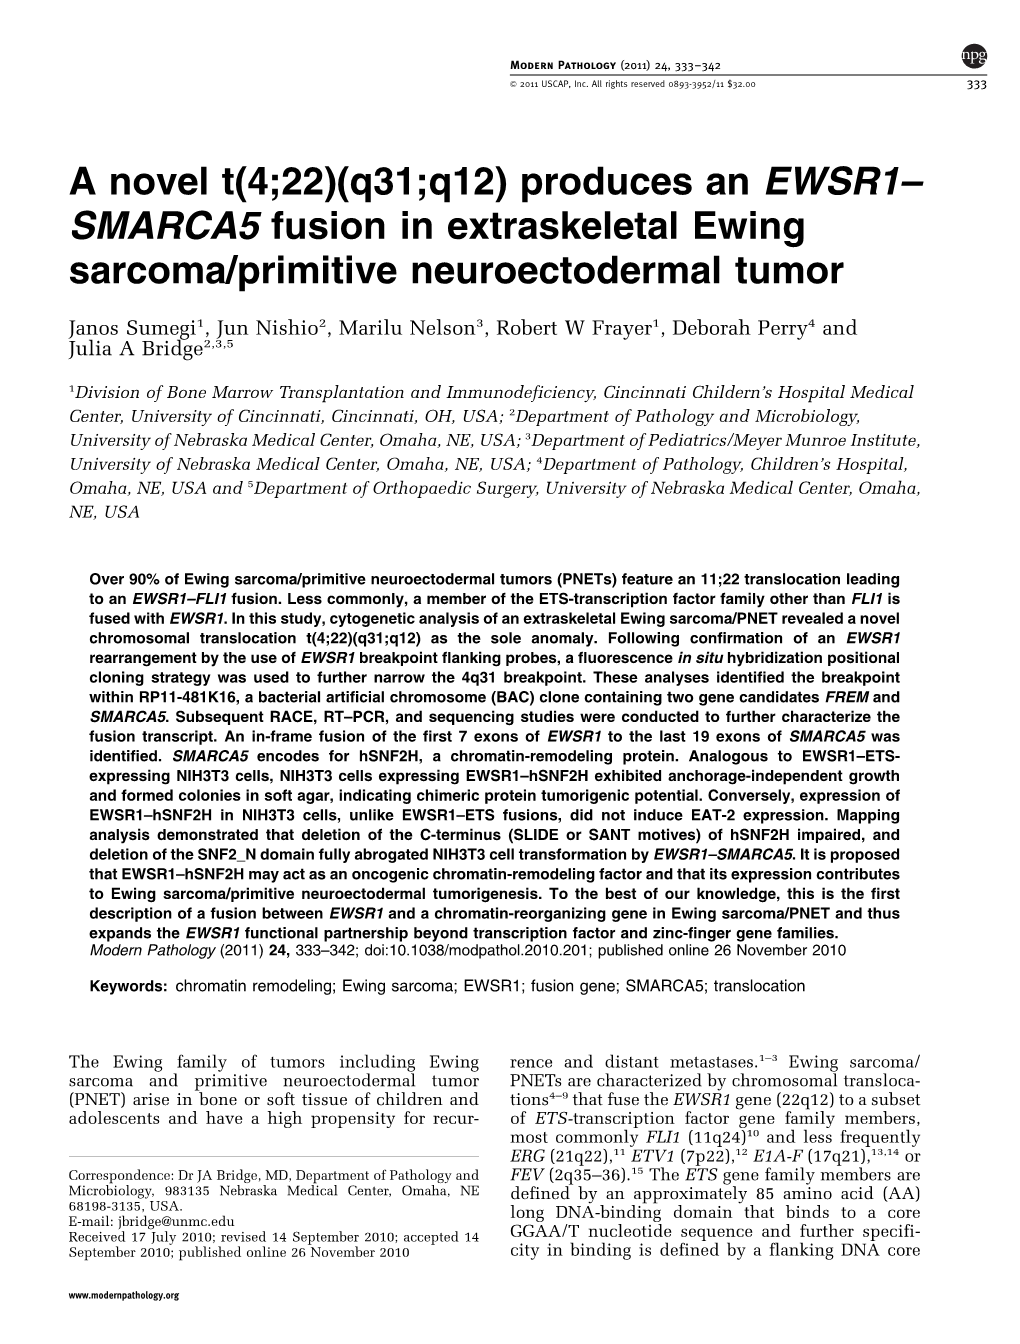 SMARCA5 Fusion in Extraskeletal Ewing Sarcoma&Sol